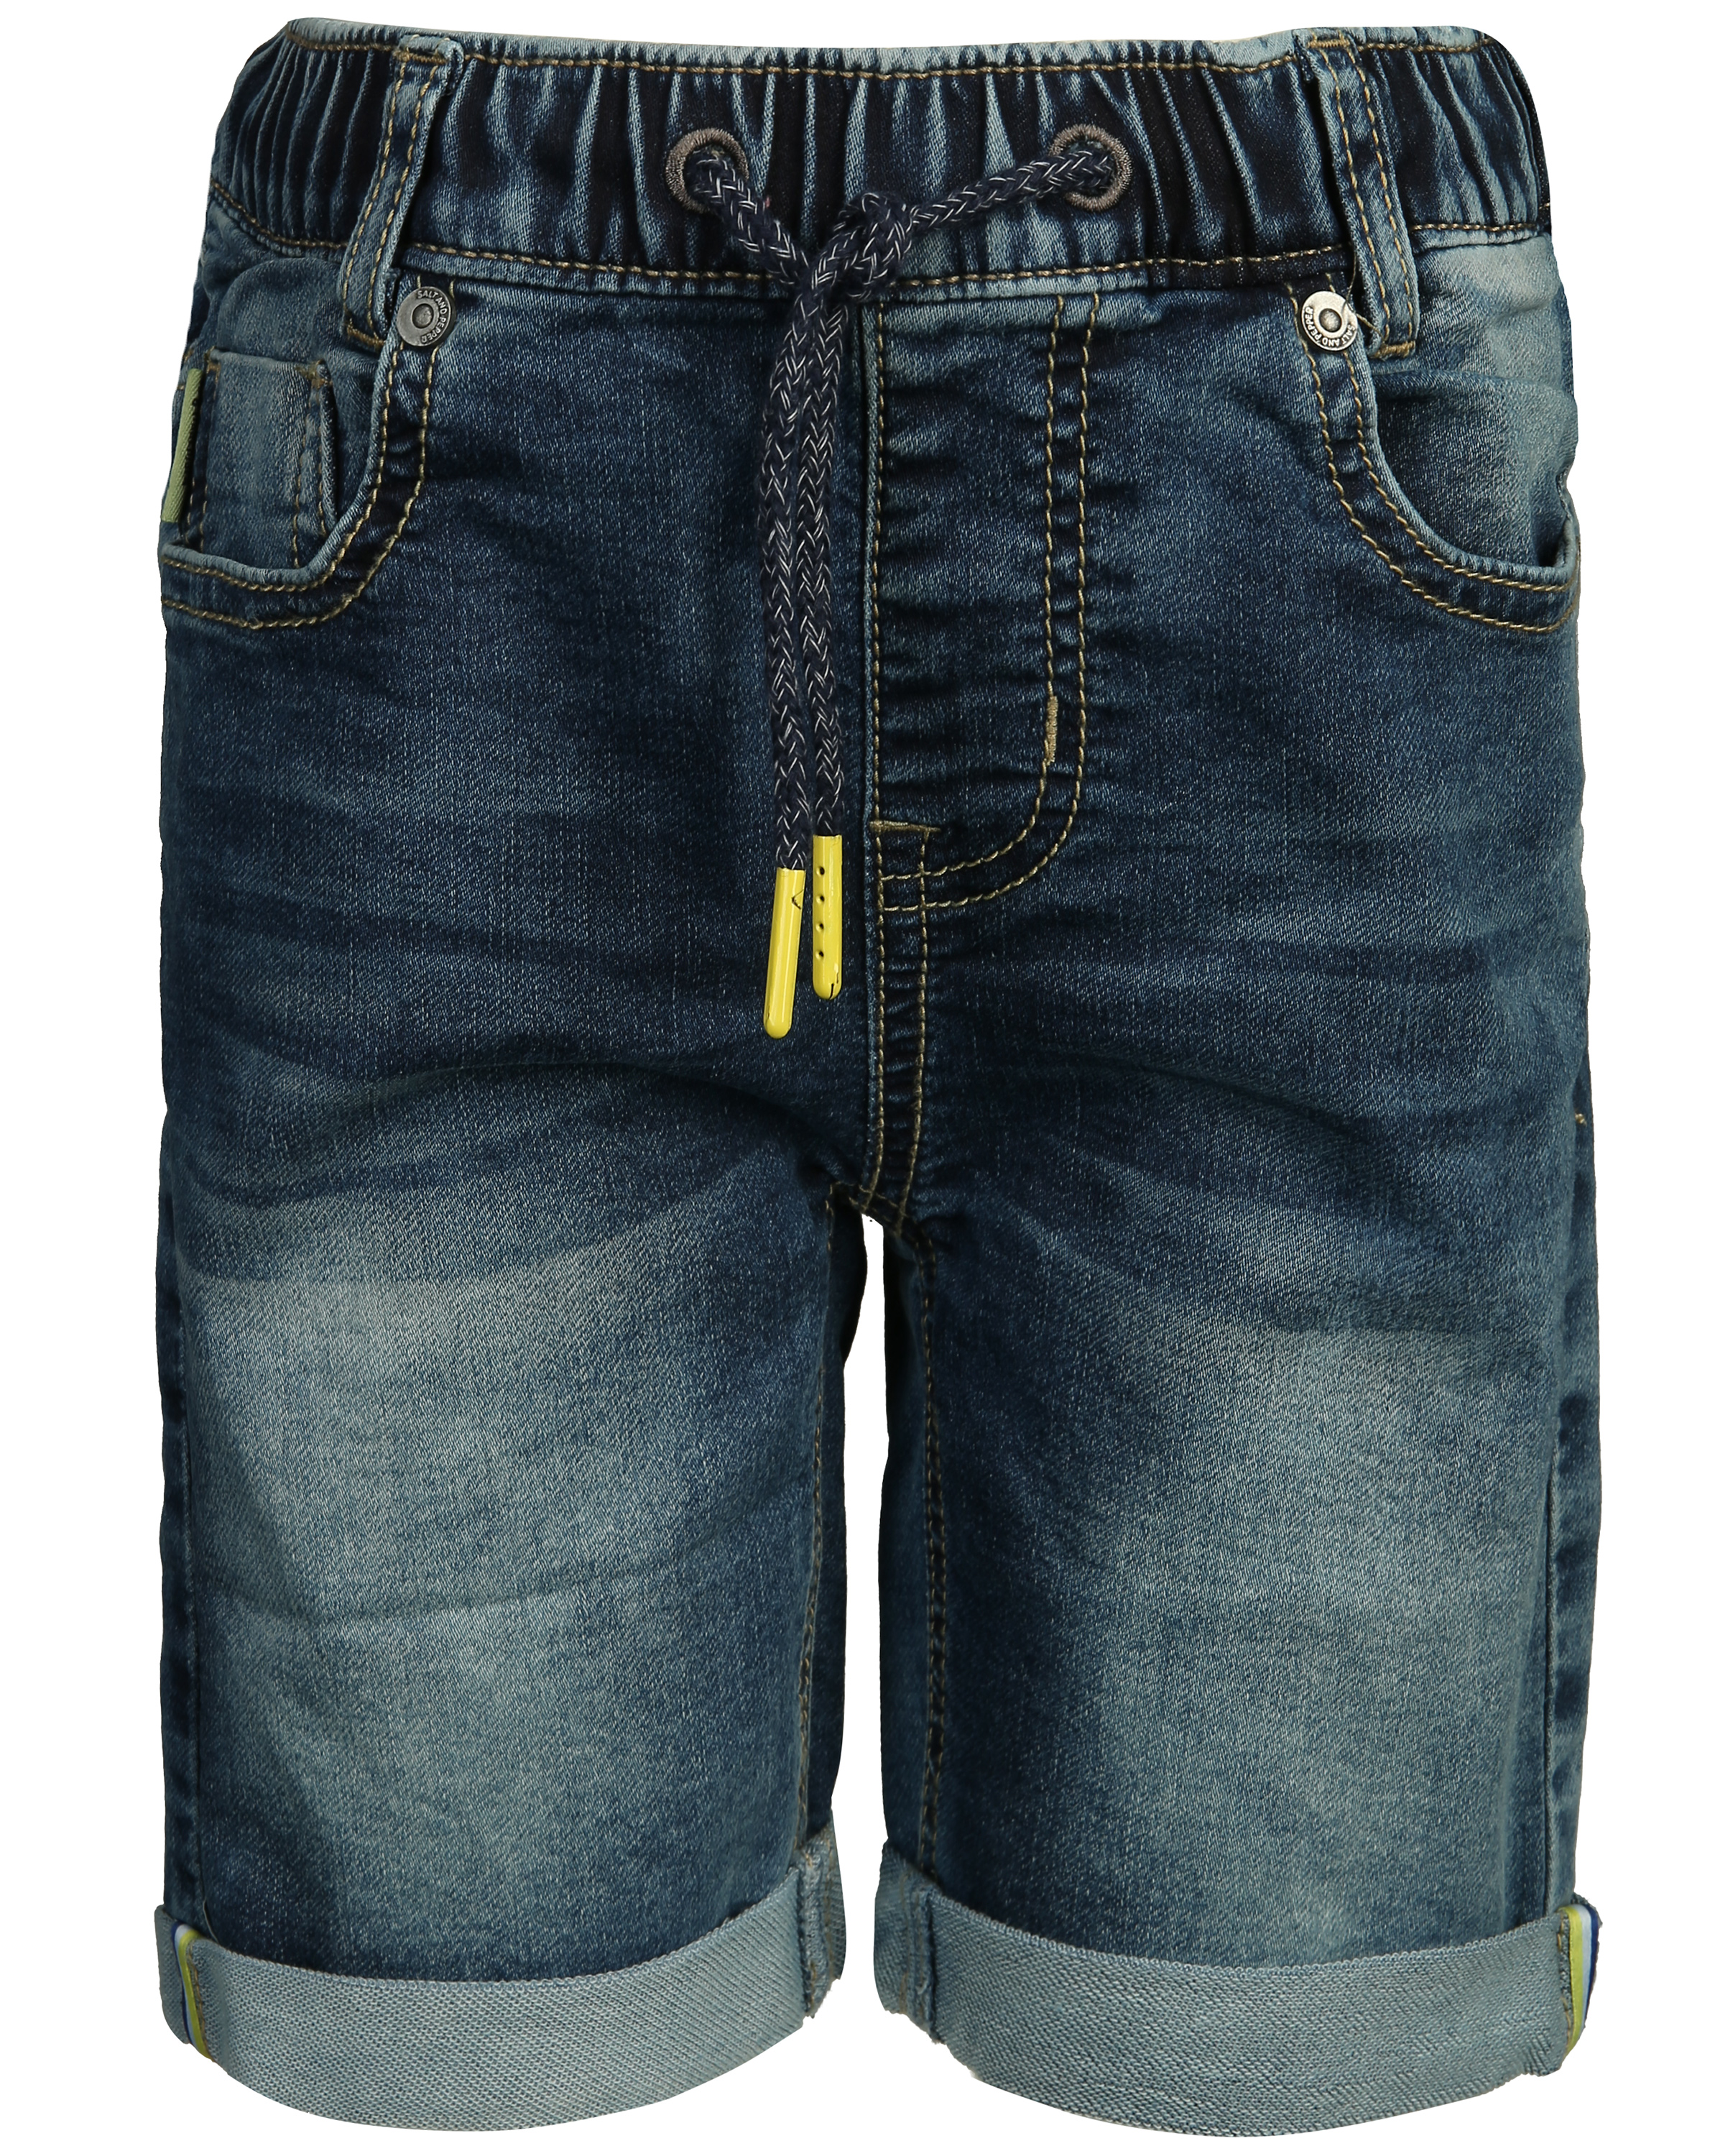 Zara Jeansshorts blau Casual-Look Mode Jeansshorts Kurze Hosen 